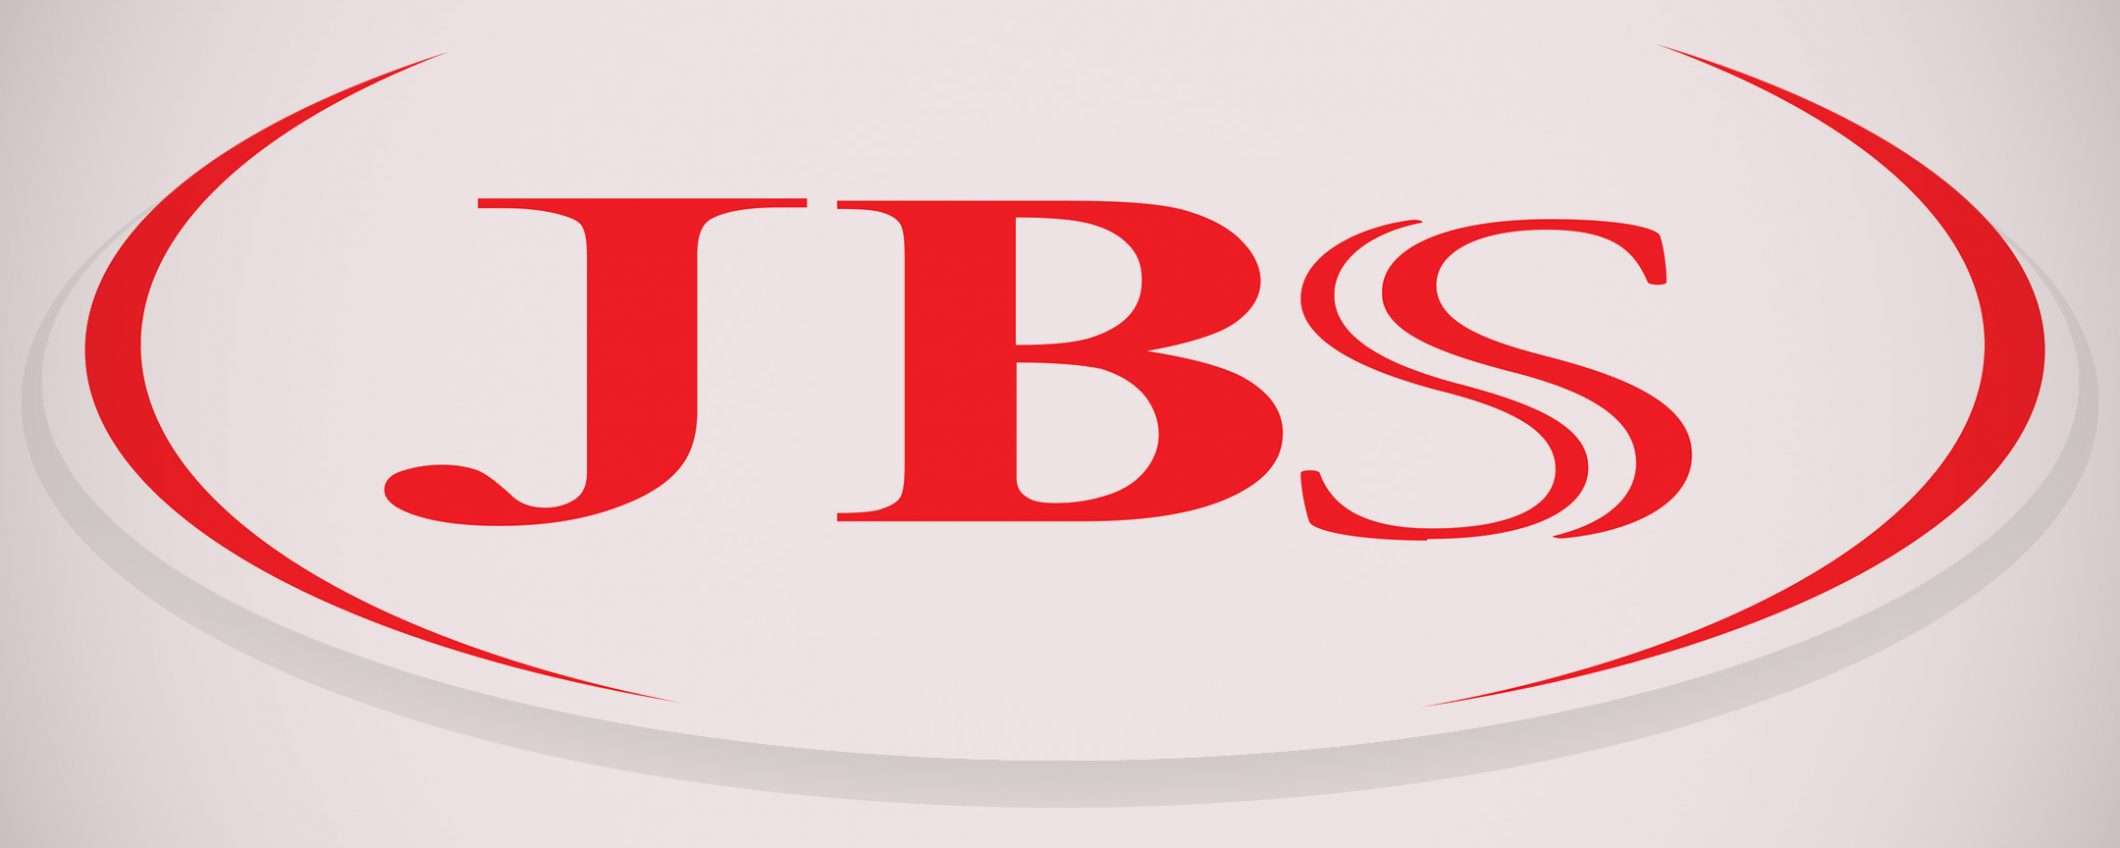 Attacco ransomware a JBS: 11 milioni di riscatto